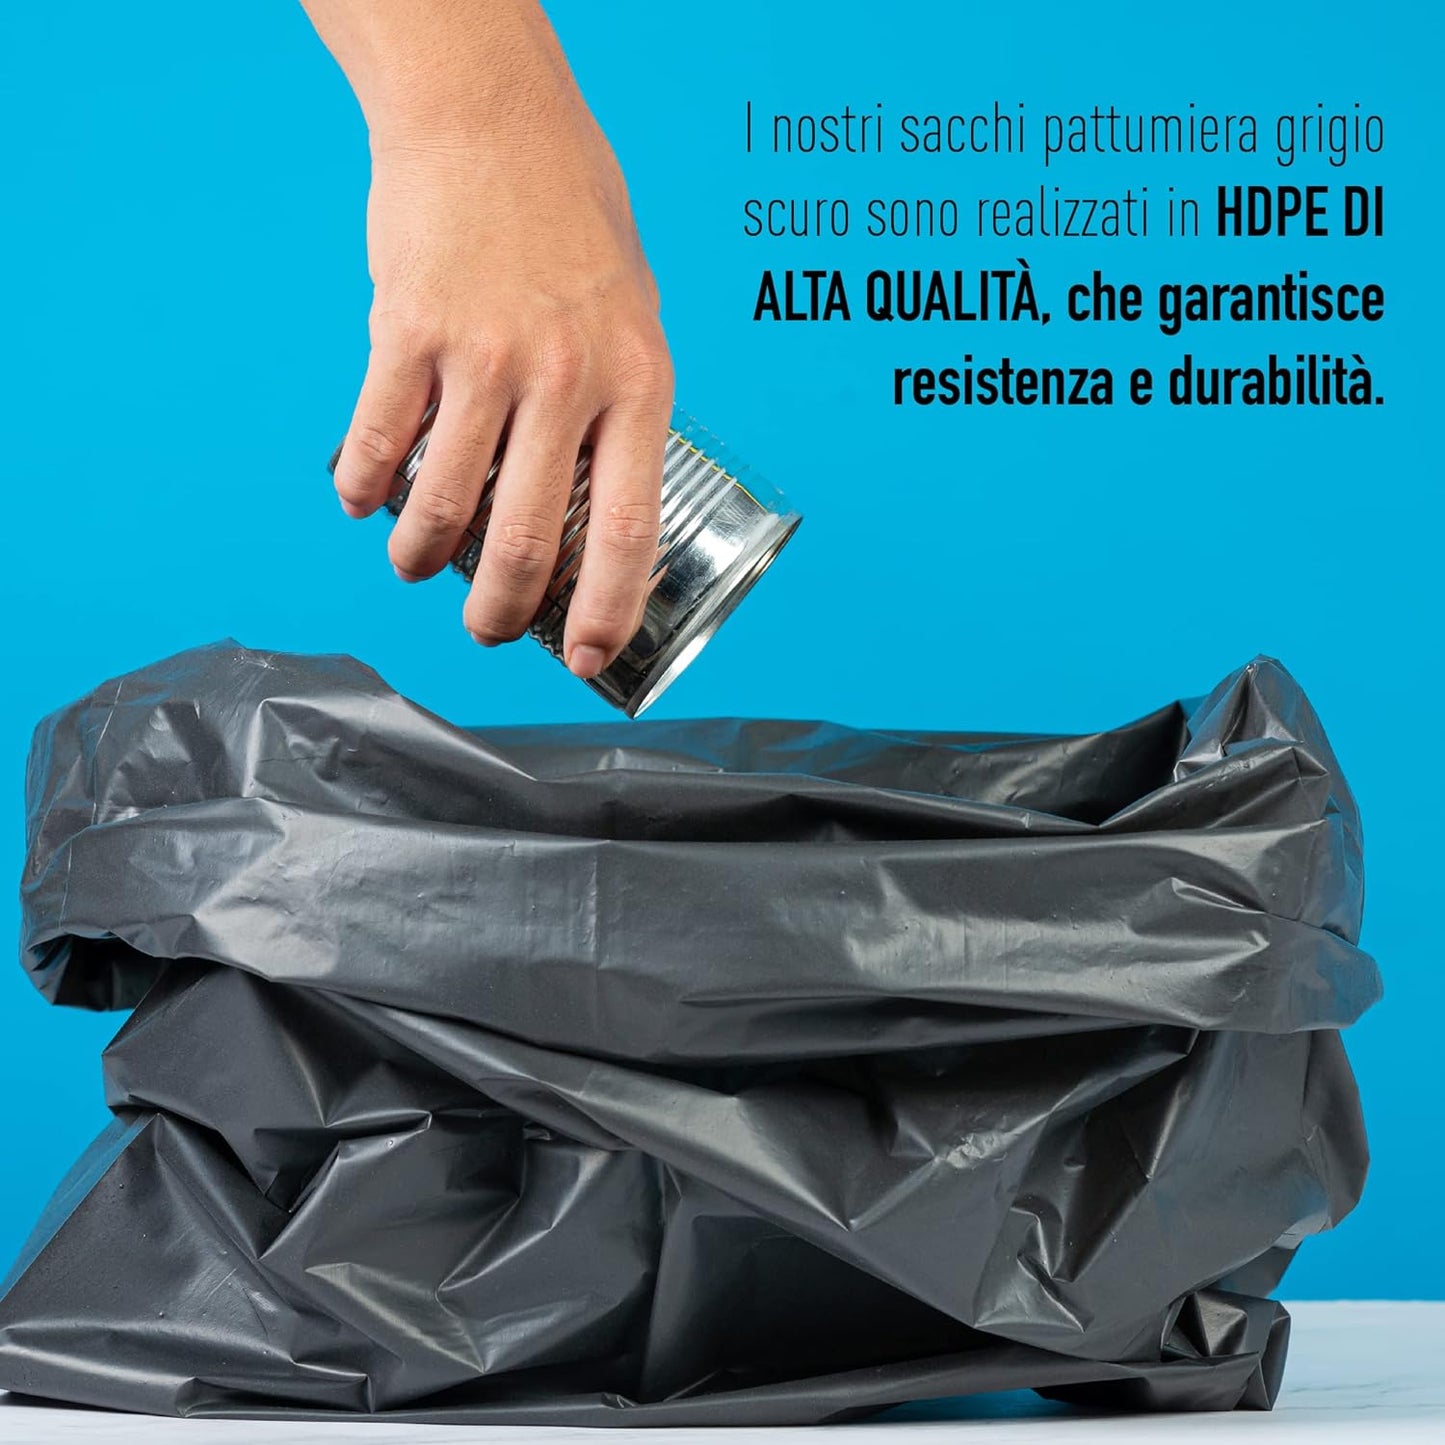 Ecobio and Go Sacchetti Spazzatura 65x80 - Confezione da 100 - Sacchi per Immondizia Resistenti e Perfetti per la Raccolta Differenziata